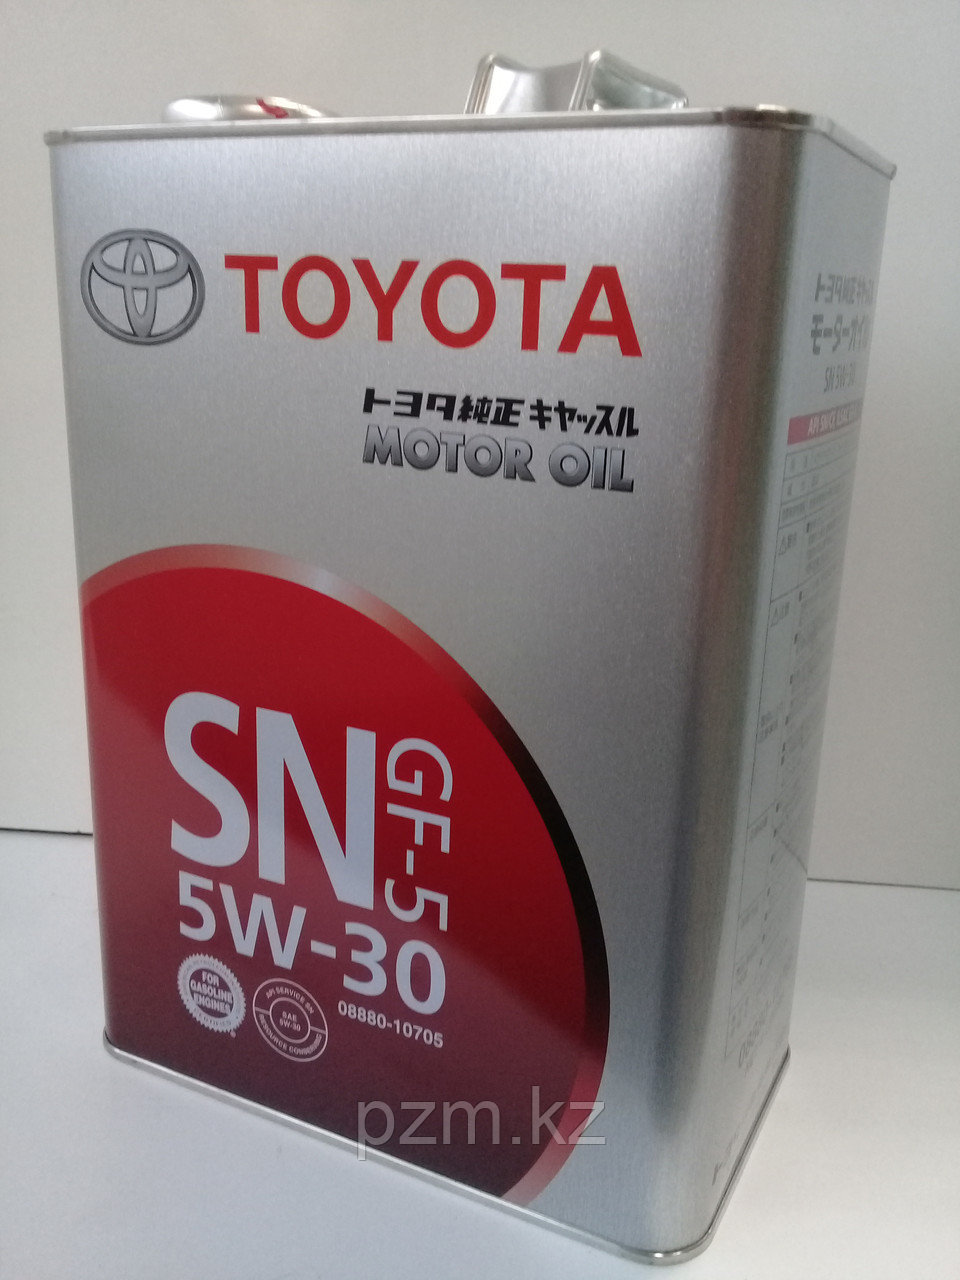 Замена масла в двигателе Toyota Auris (масло + фильтр)  оригинальное моторное масло тойота 5W30